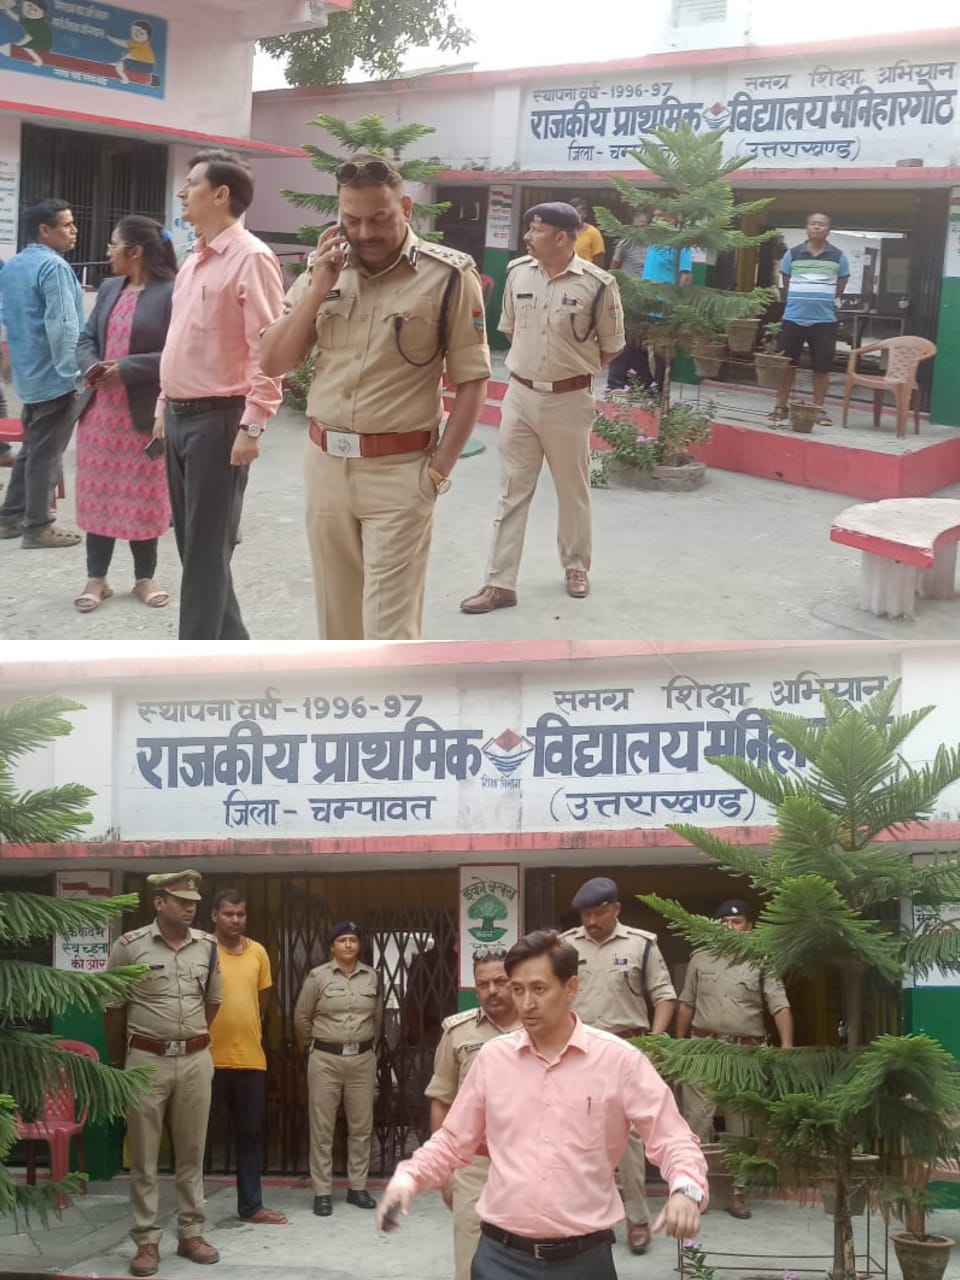 कुमाऊं कमिश्नर एवं पुलिस उपमहानिरीक्षक कुमाऊं रेंज के द्वारा टनकपुर बनबसा क्षेत्र के मतदान केंद्रों का किया गया निरीक्षण